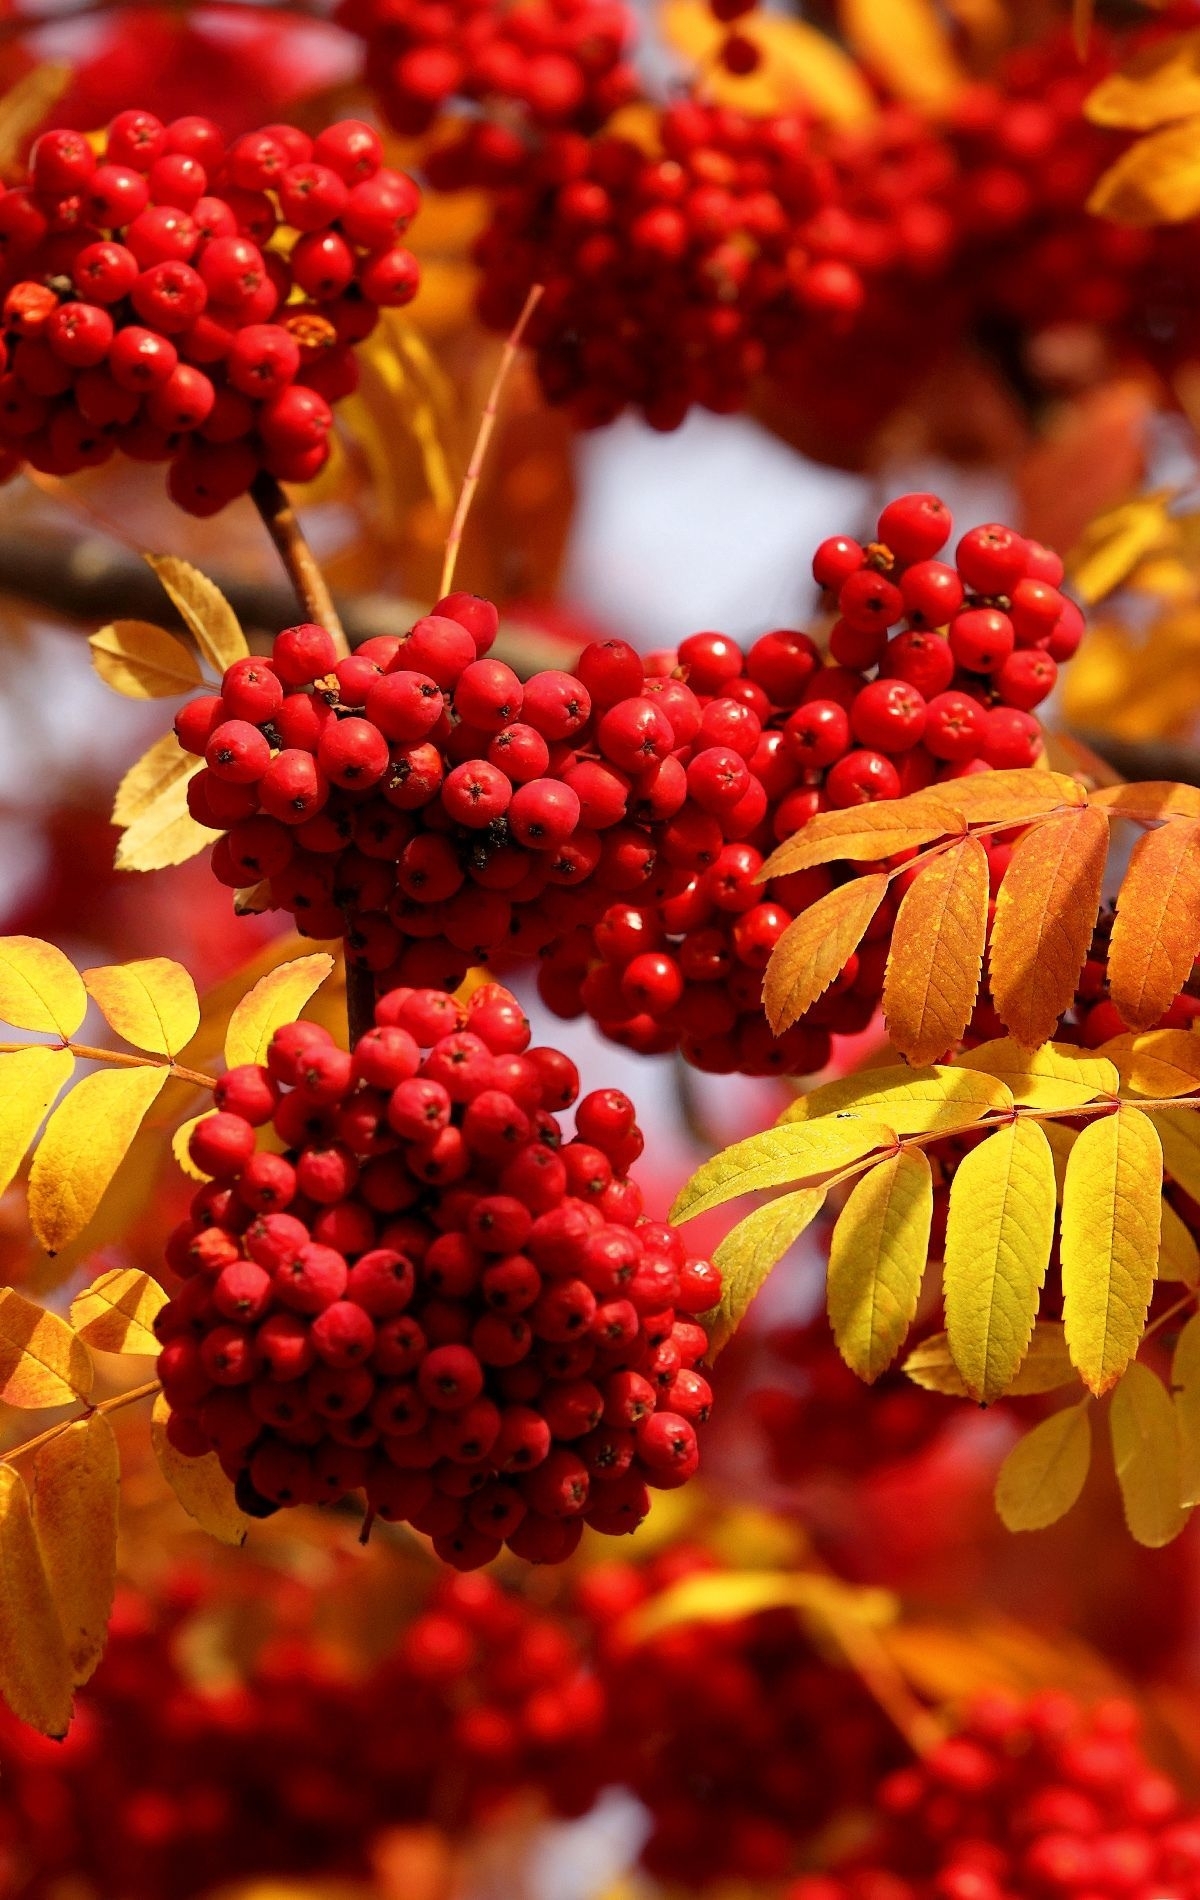 Картинка: Рябина, красная, ягоды, грозди, ветки, листья, осень, природа